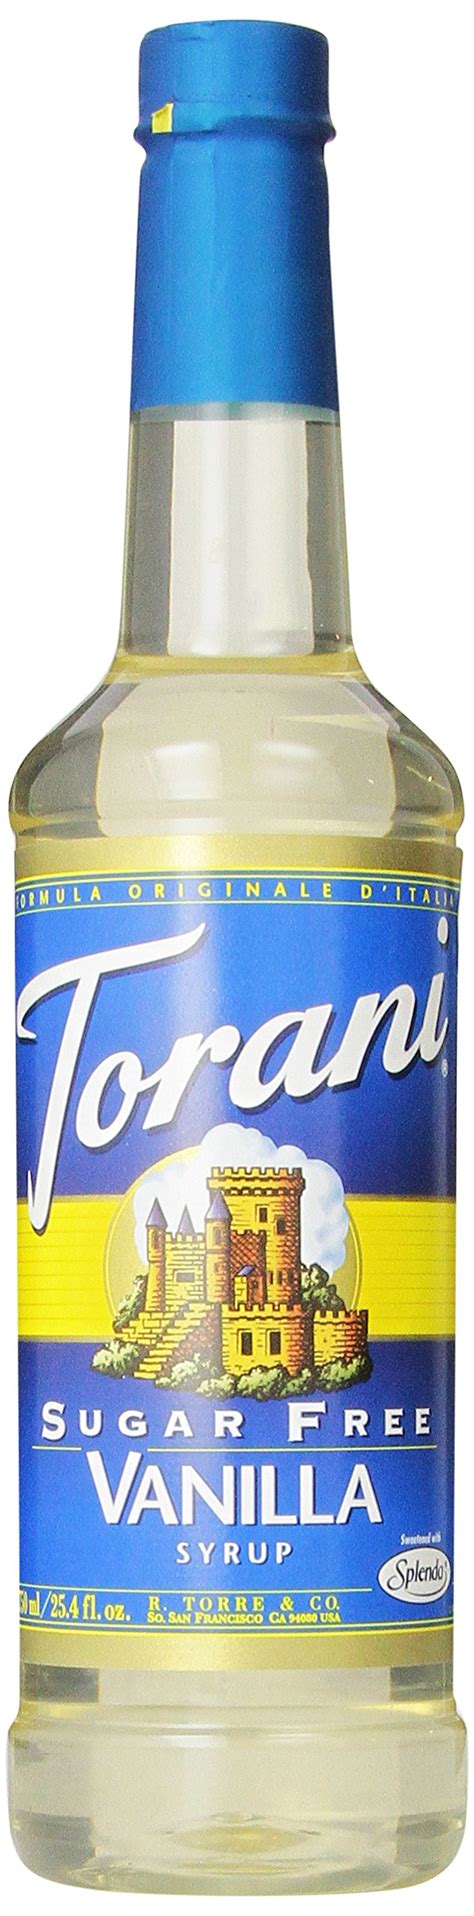 Torani Sugar Free Syrup Vanilla Ounce Pack Of Sugar